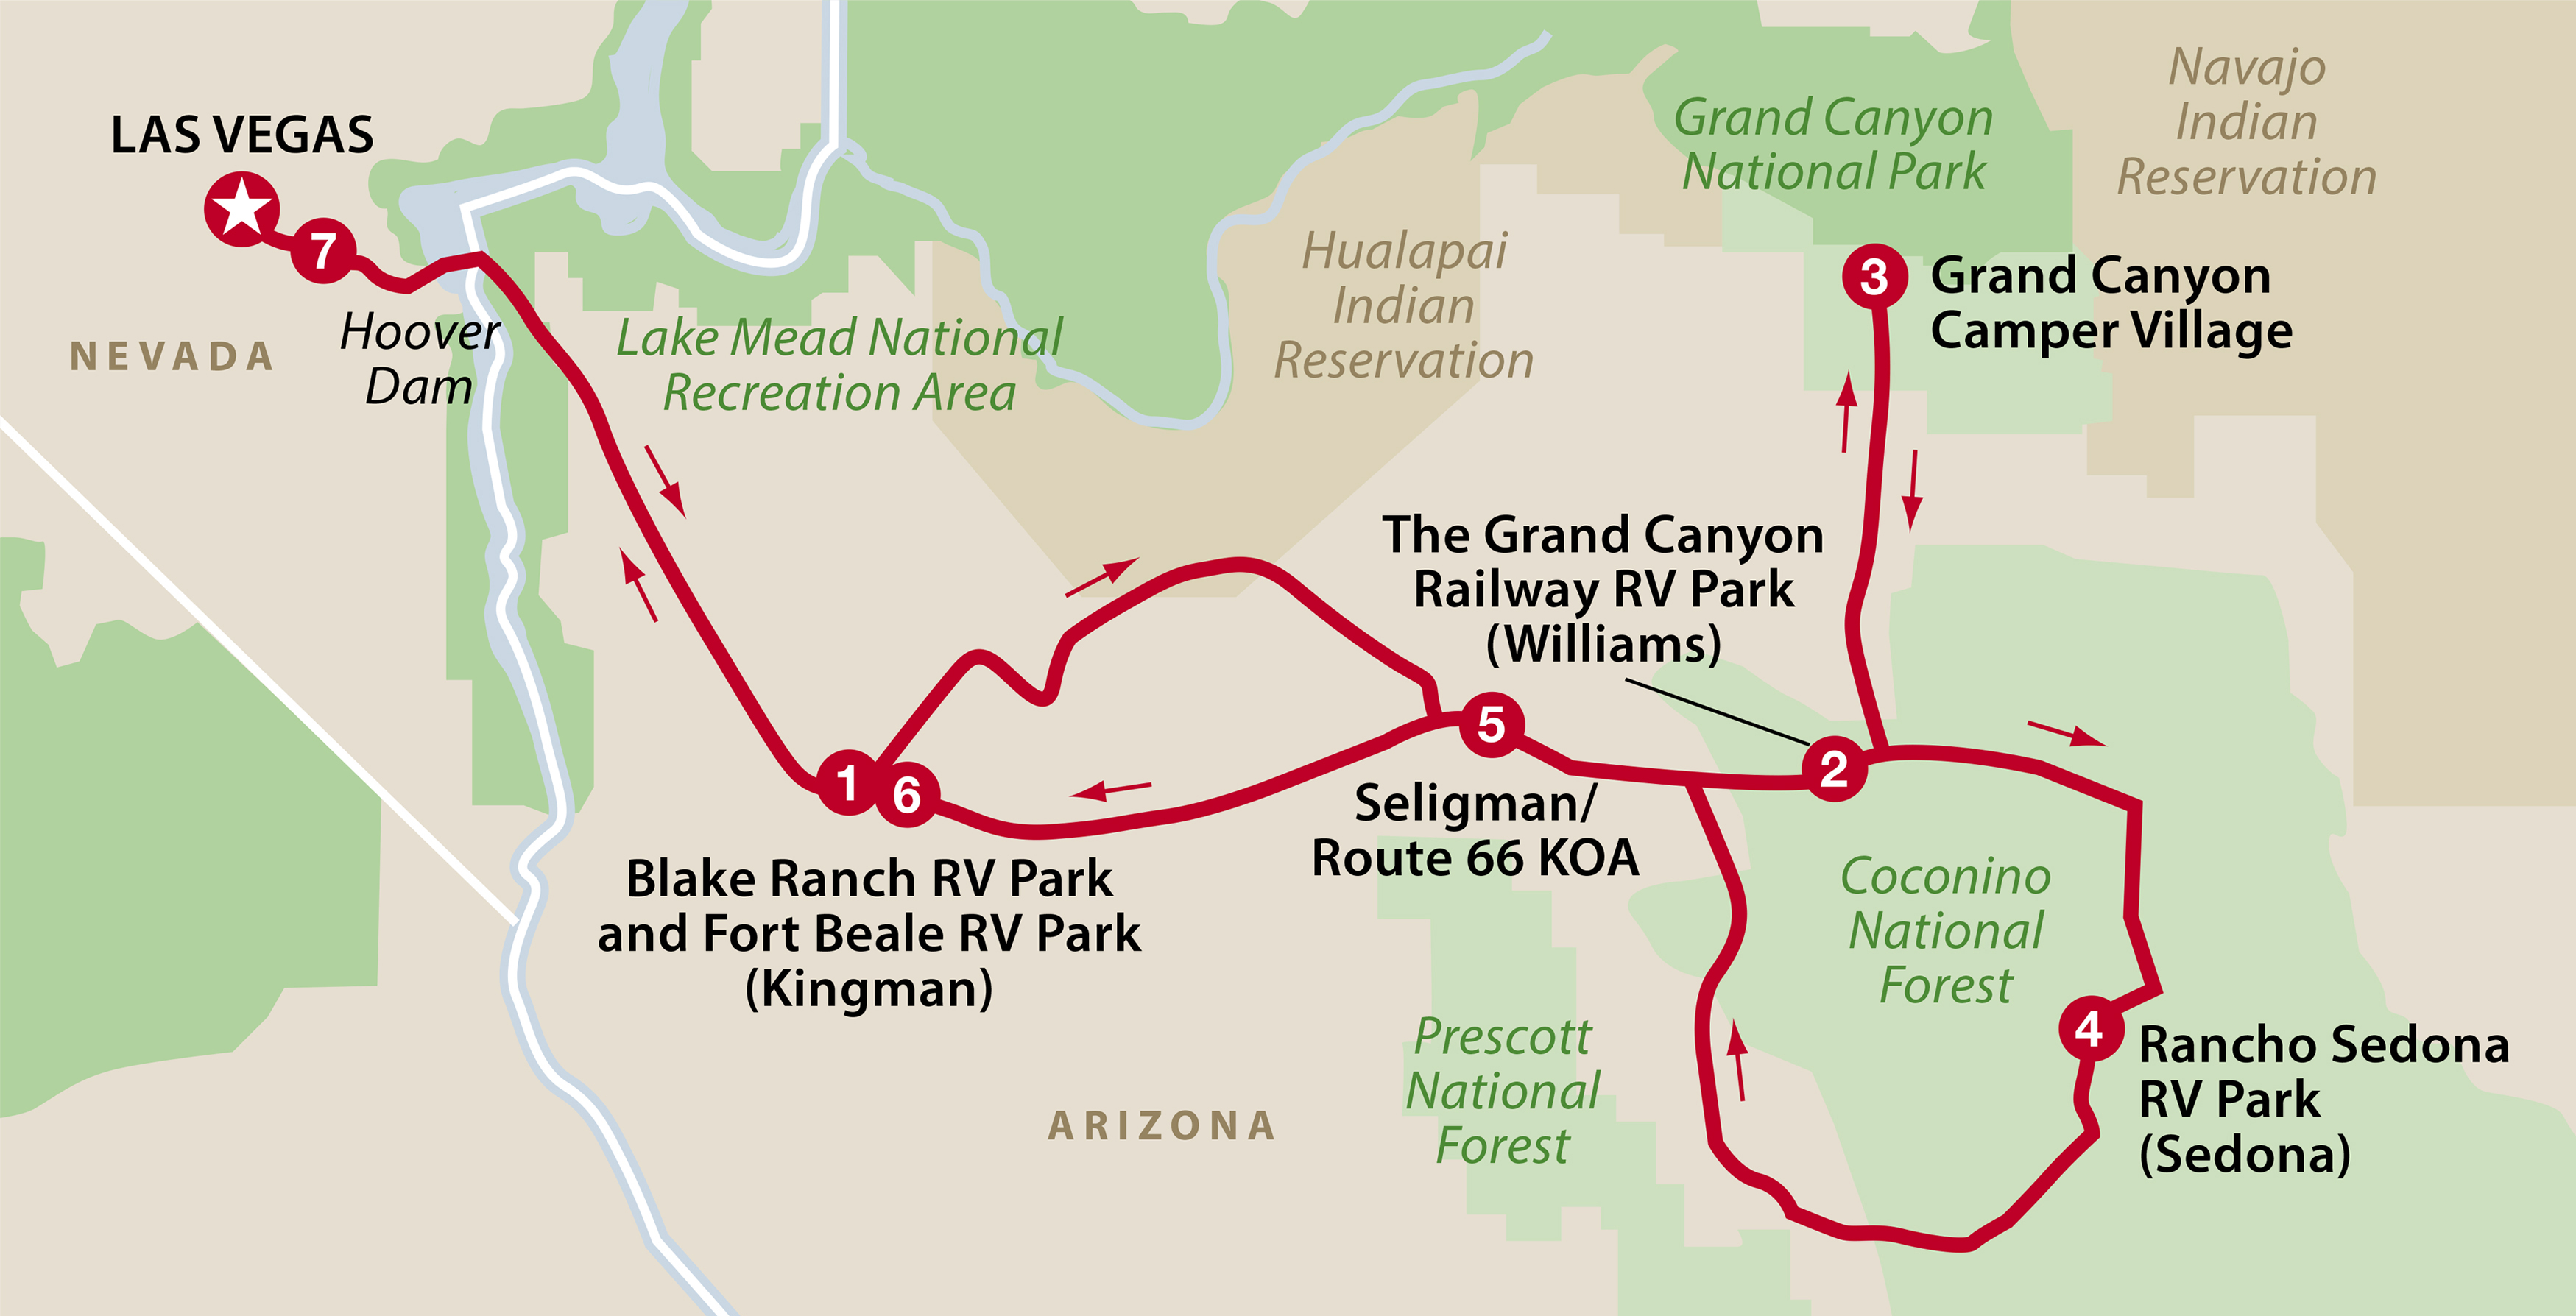 Wielki Kanion Kolorado i Las Vegas - trasa podróży kamperem [KOSZTY WYNAJMU] – zdjęcie 1